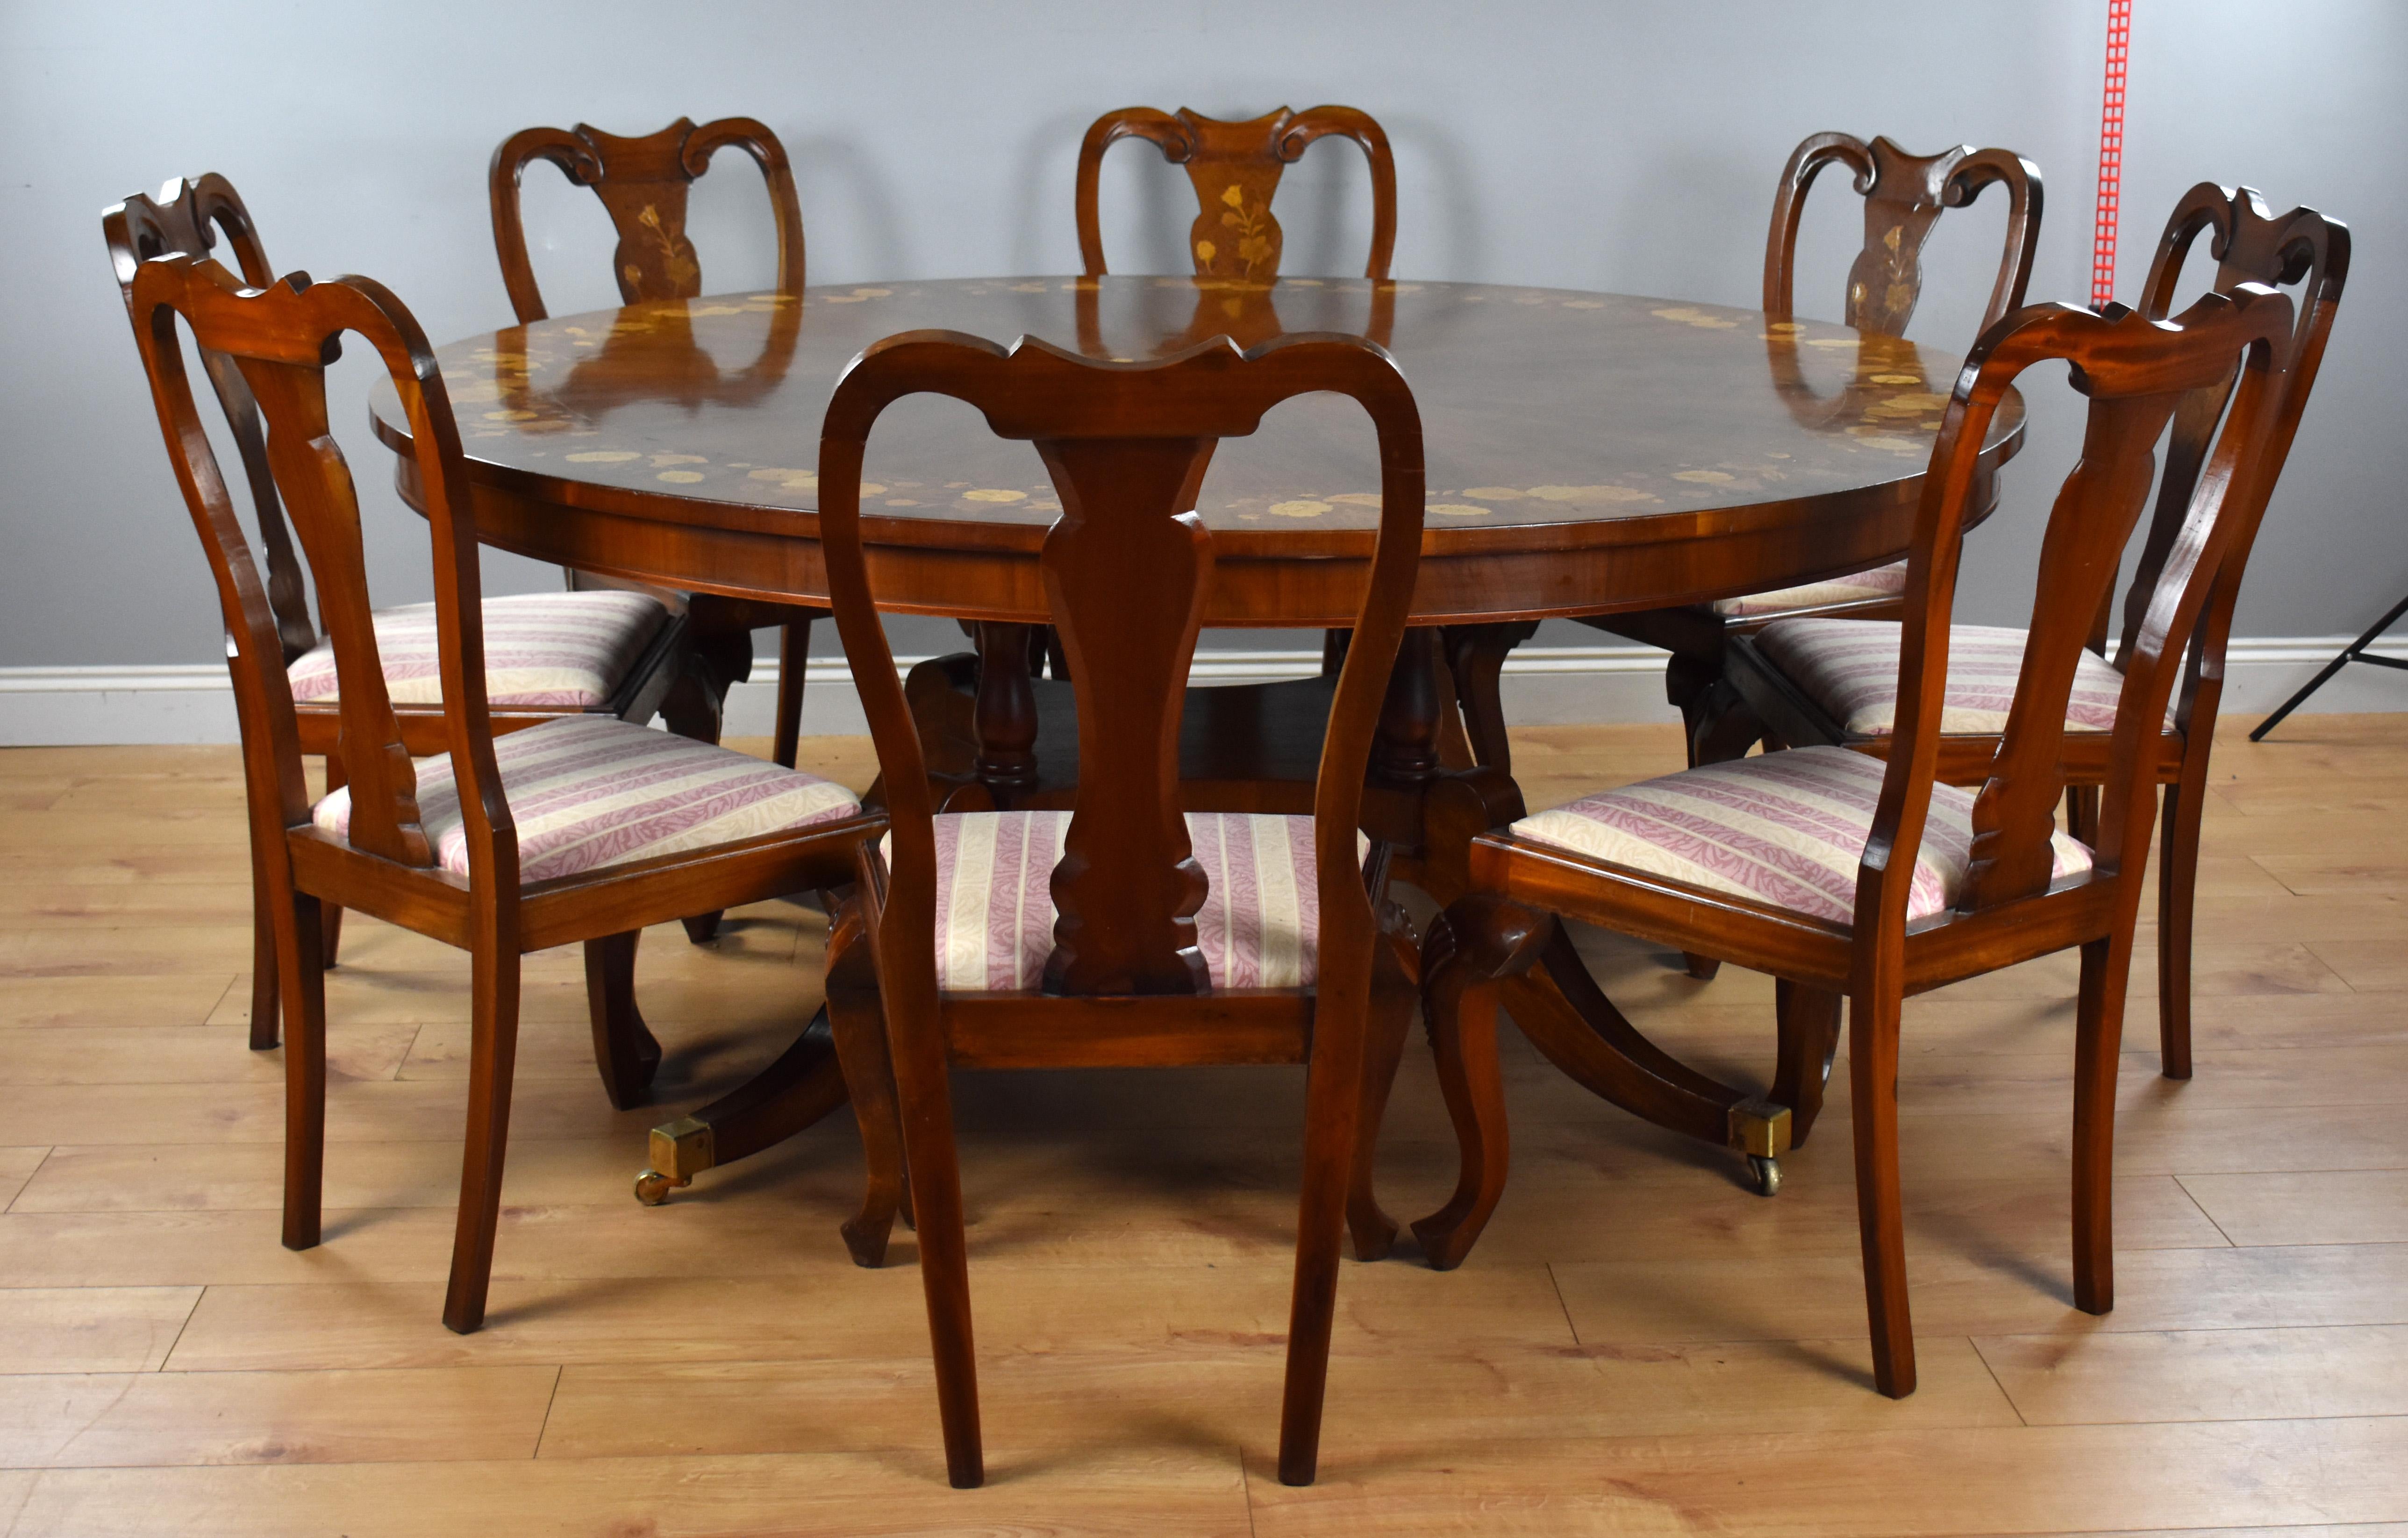 Eine gute Qualität große runde Nussbaum und Intarsien Esstisch mit einer Reihe von 8 passenden Intarsien Esszimmerstühle. Die Tischplatte hat radiale Nussbaumfurniere, schön eingelegt mit floralen Intarsien an der Kante sowie eine zentrale Platte,